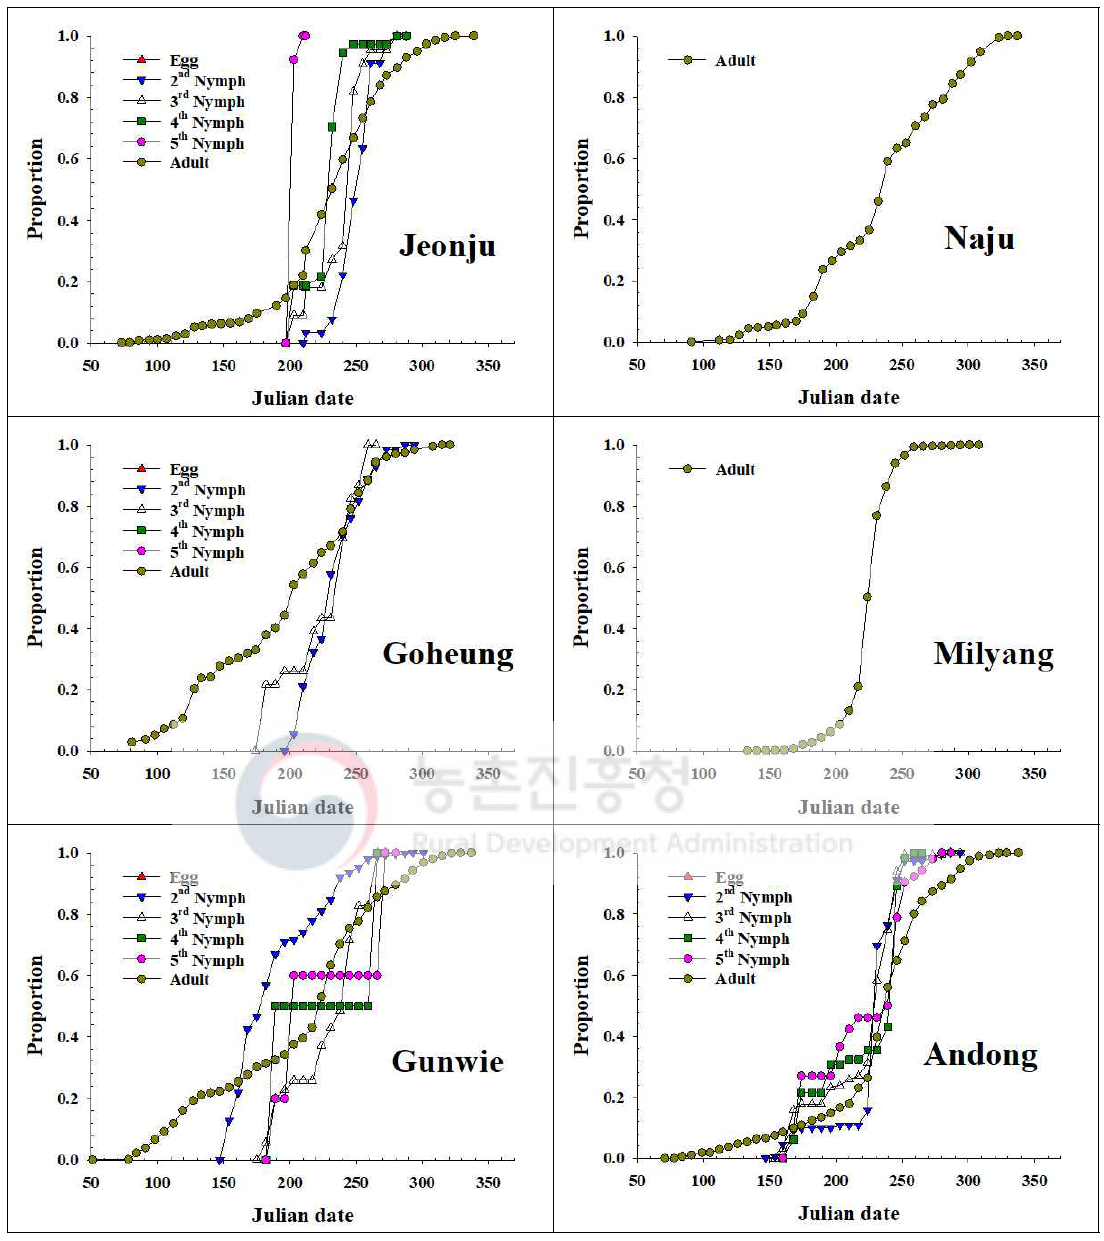 내륙지역 톱다리개미허리노린재 발육단계별 개체수 누적증가 비교(2020)